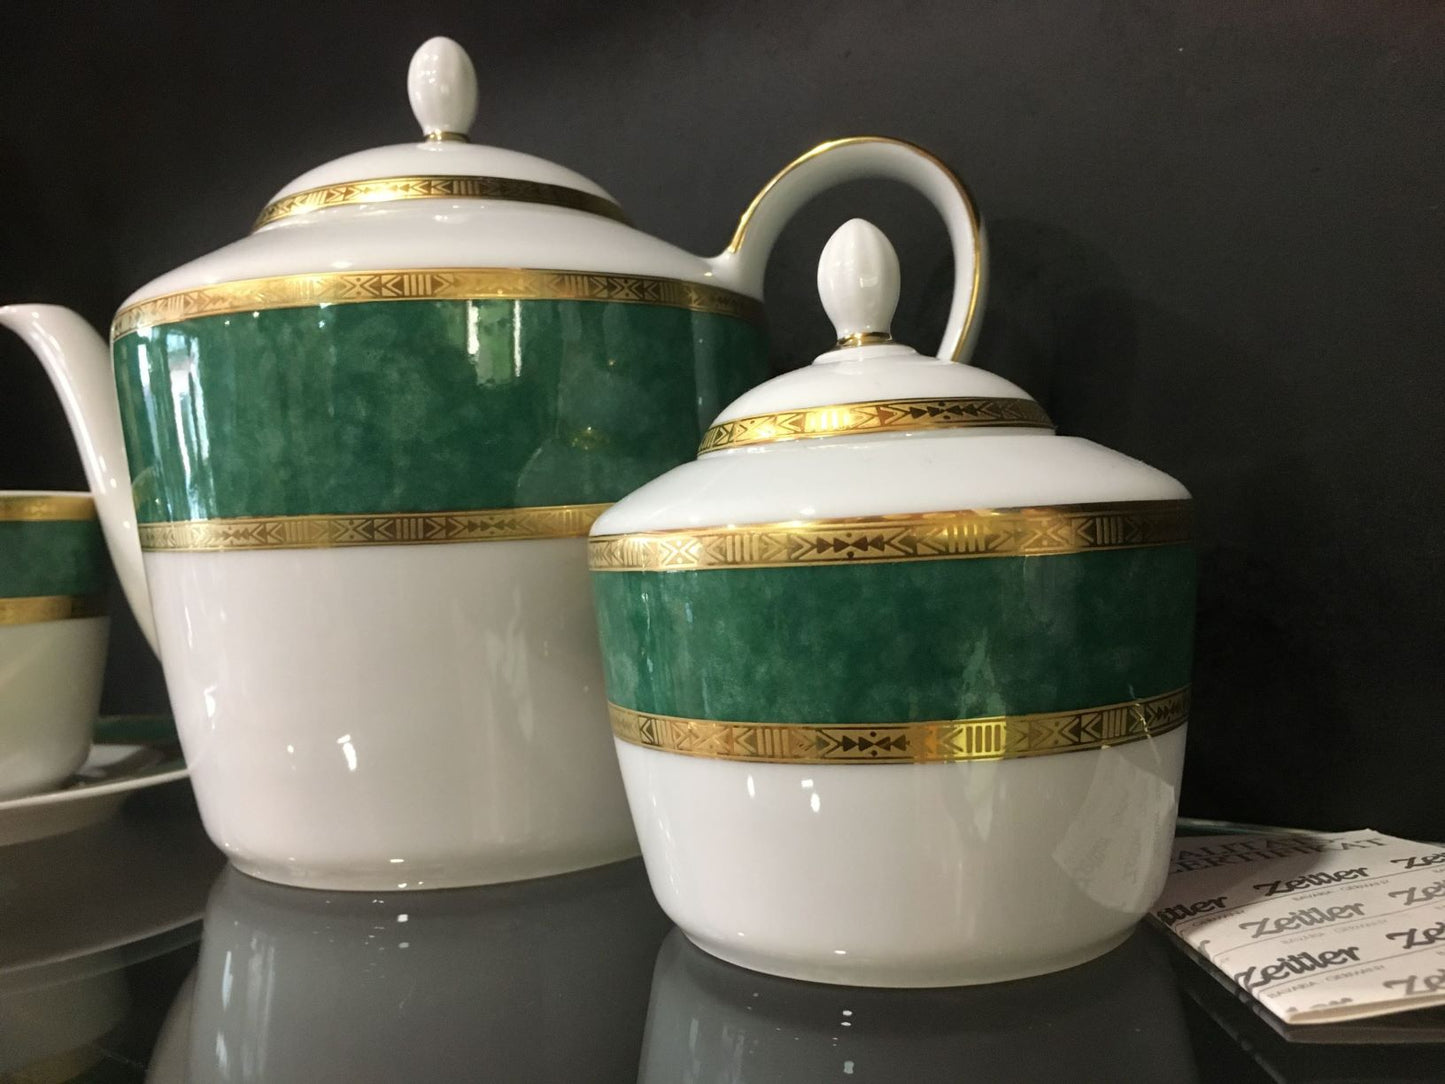 Servizio da tè in porcellana decorata con oro zecchino. Composto da : 12 tazze da tè con piatto in porcellana1 teiera in porcellana1 zuccheriera in porcellana. In negozio e online su tuttochic.it